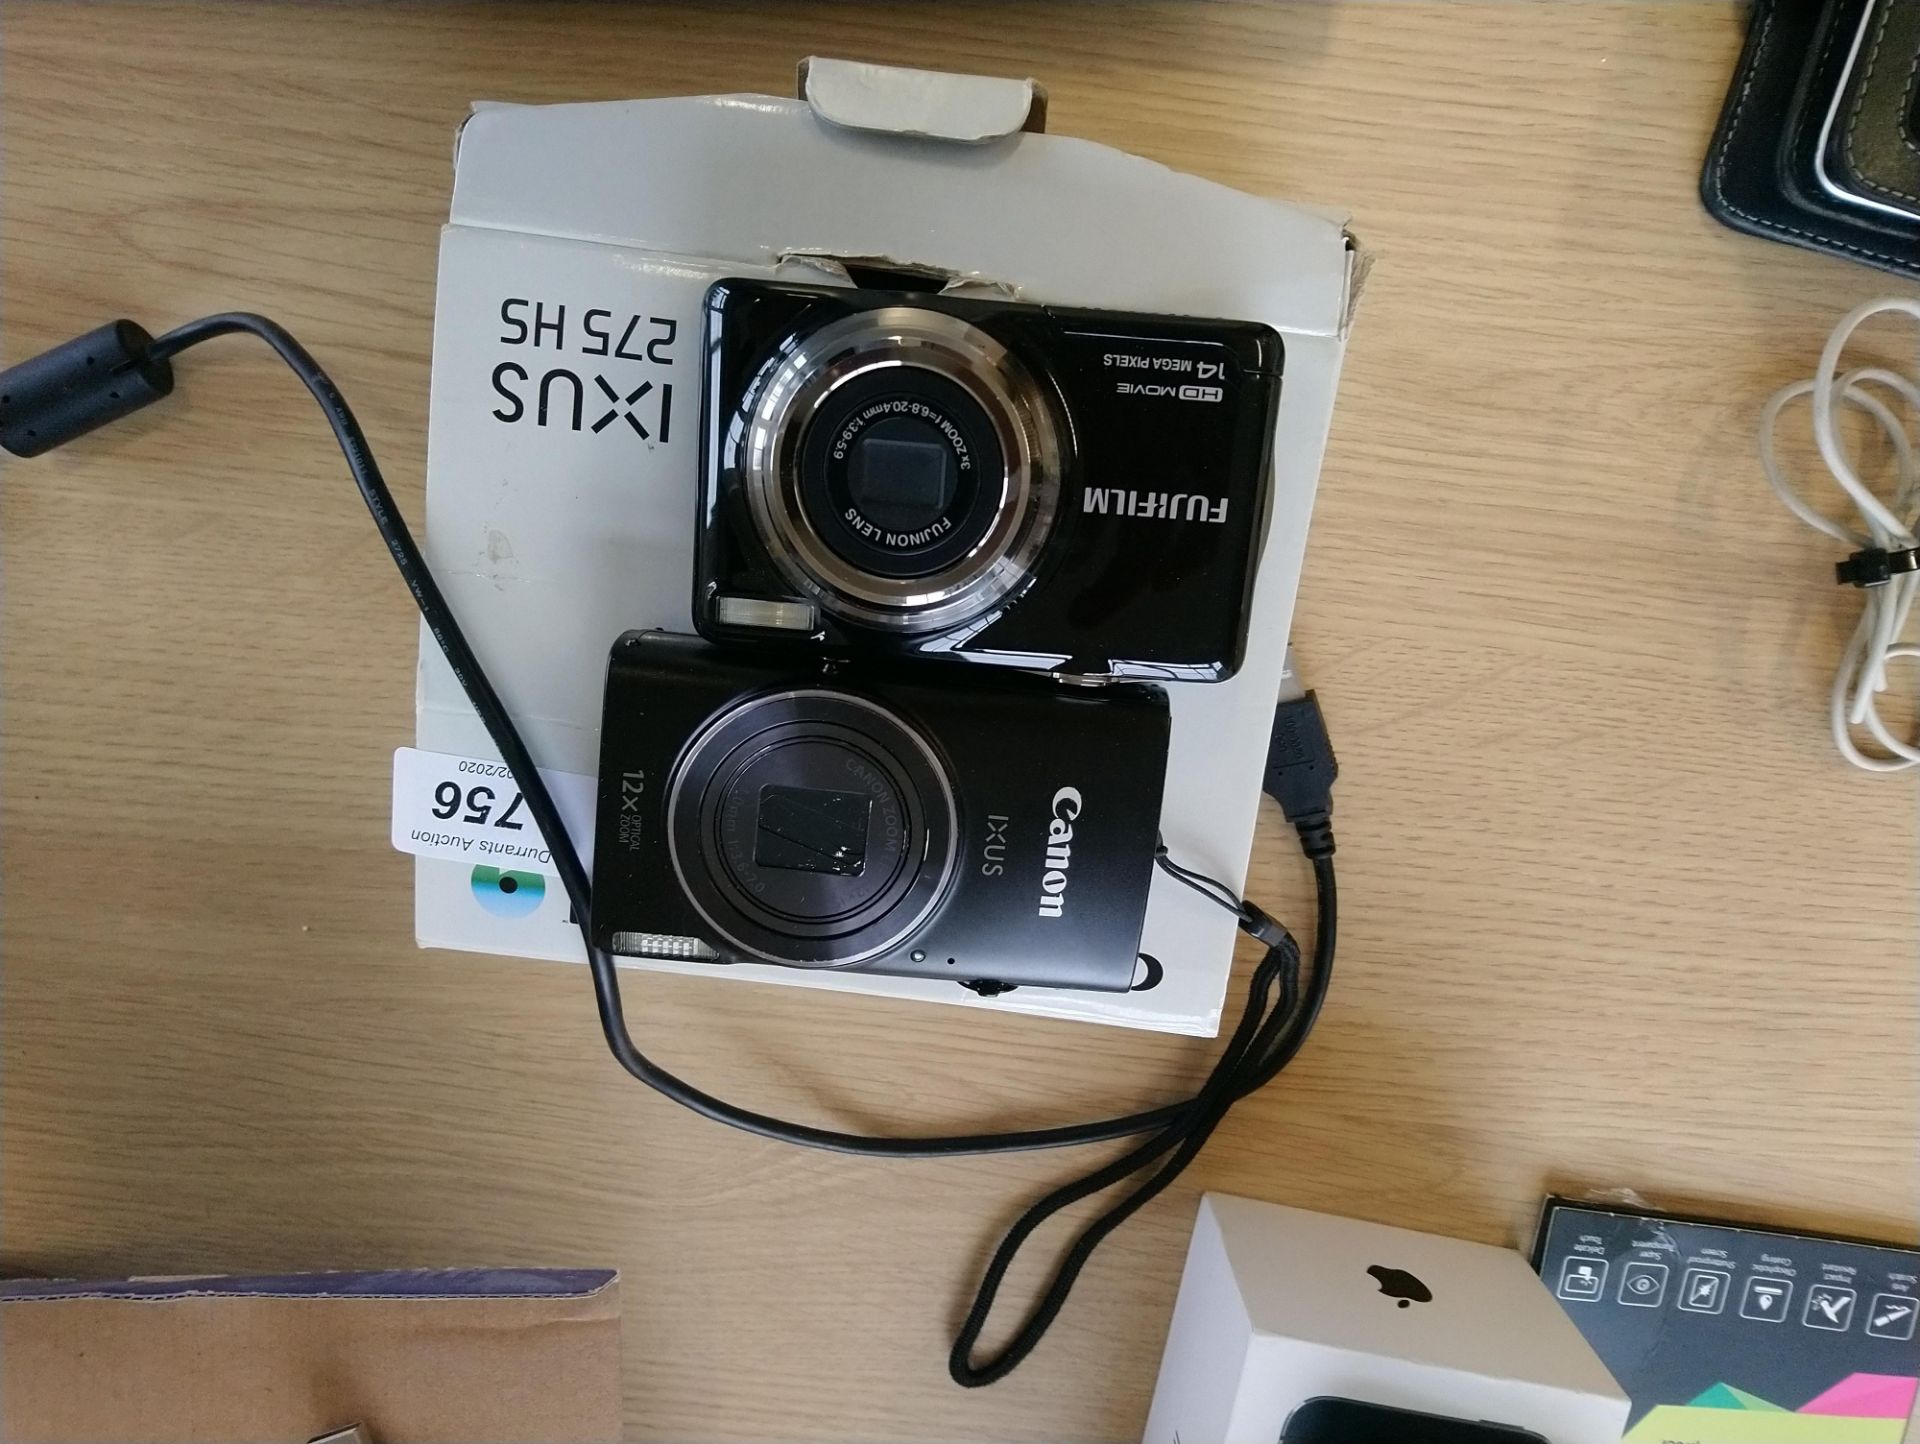 Canon Ixus 275 HS Digital Camera and Fujifilm 14mega pixel Camera